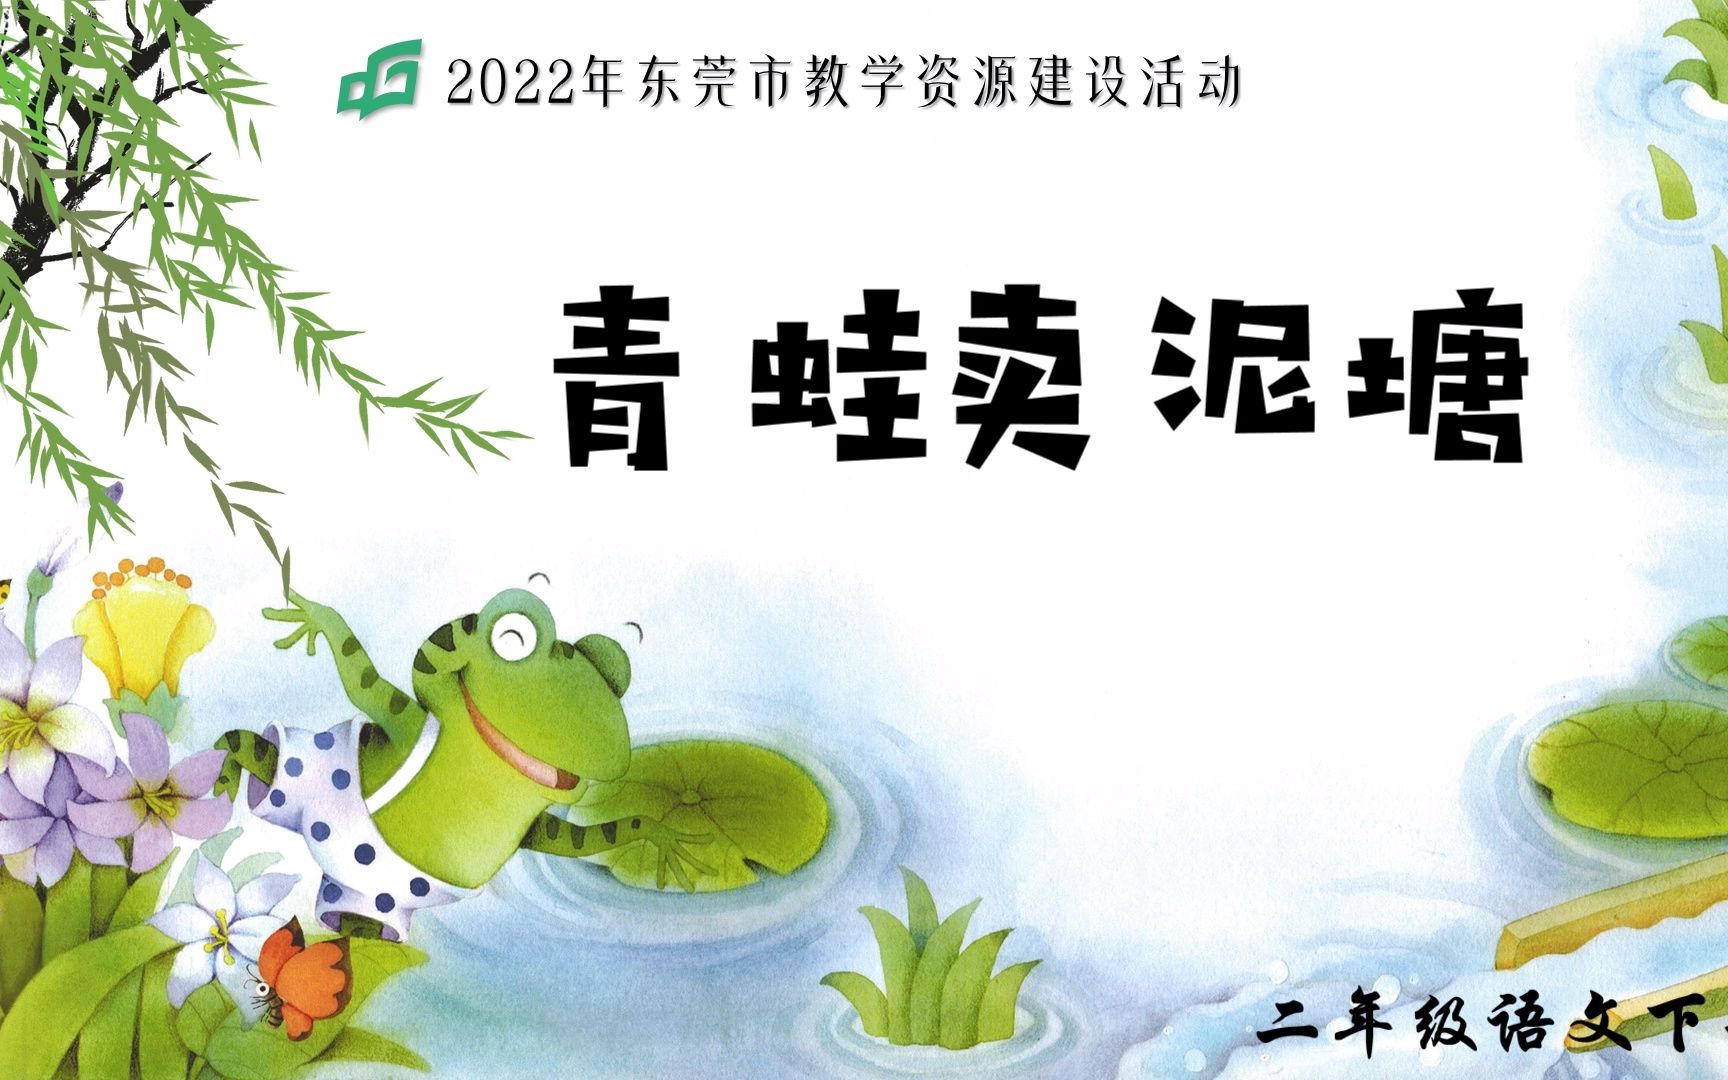 微课《青蛙卖泥塘》——想象补白,练习说话